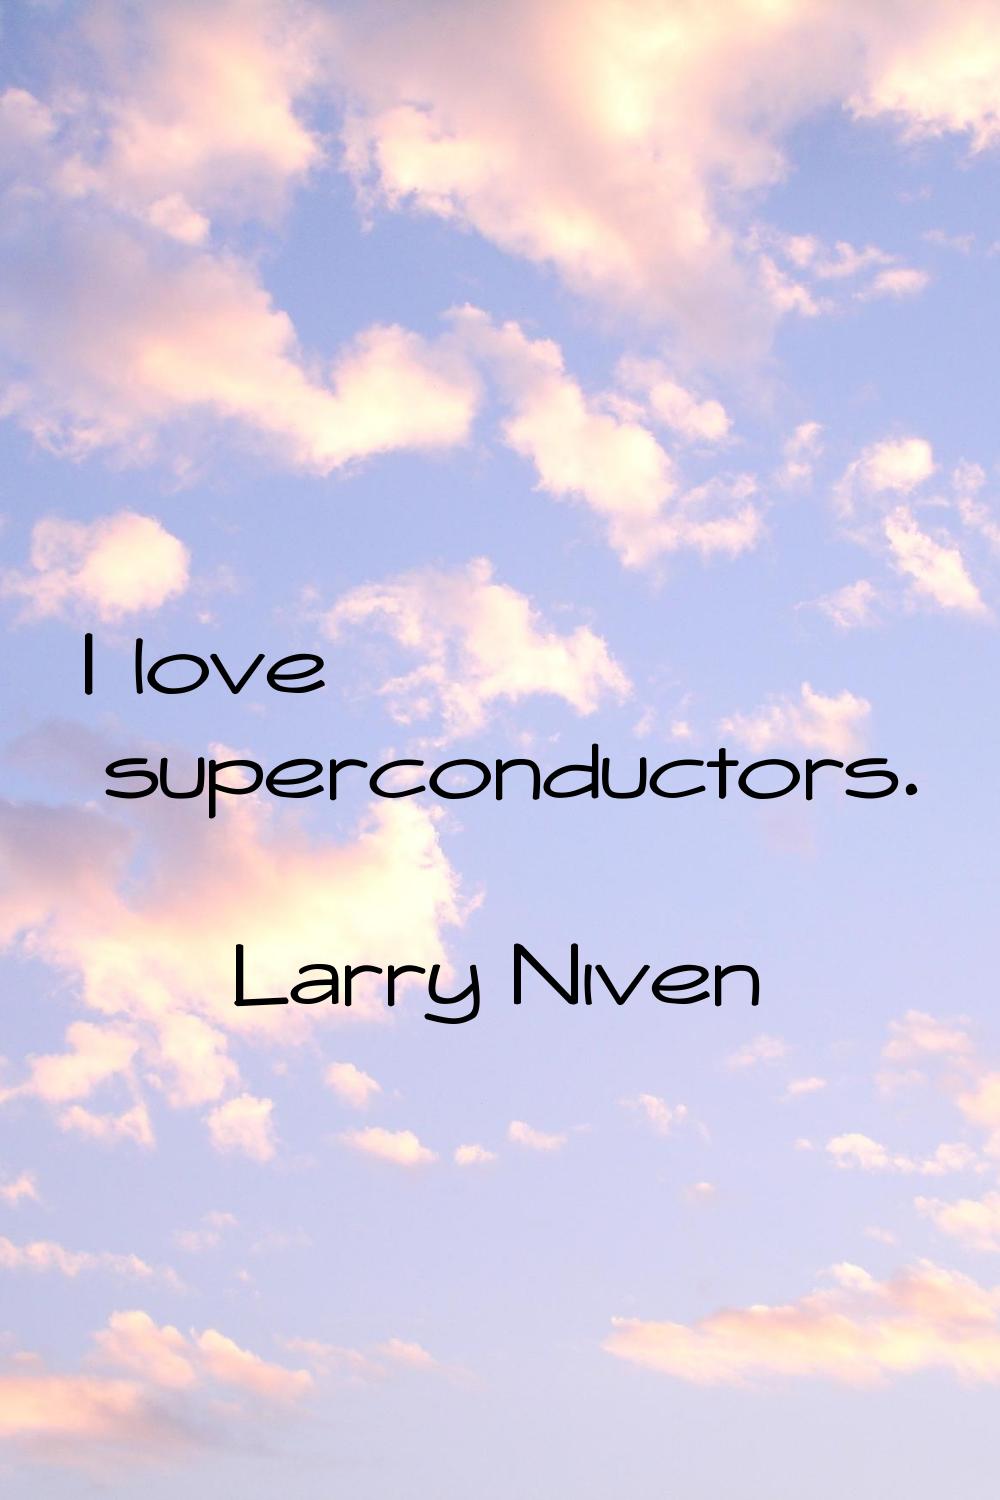 I love superconductors.